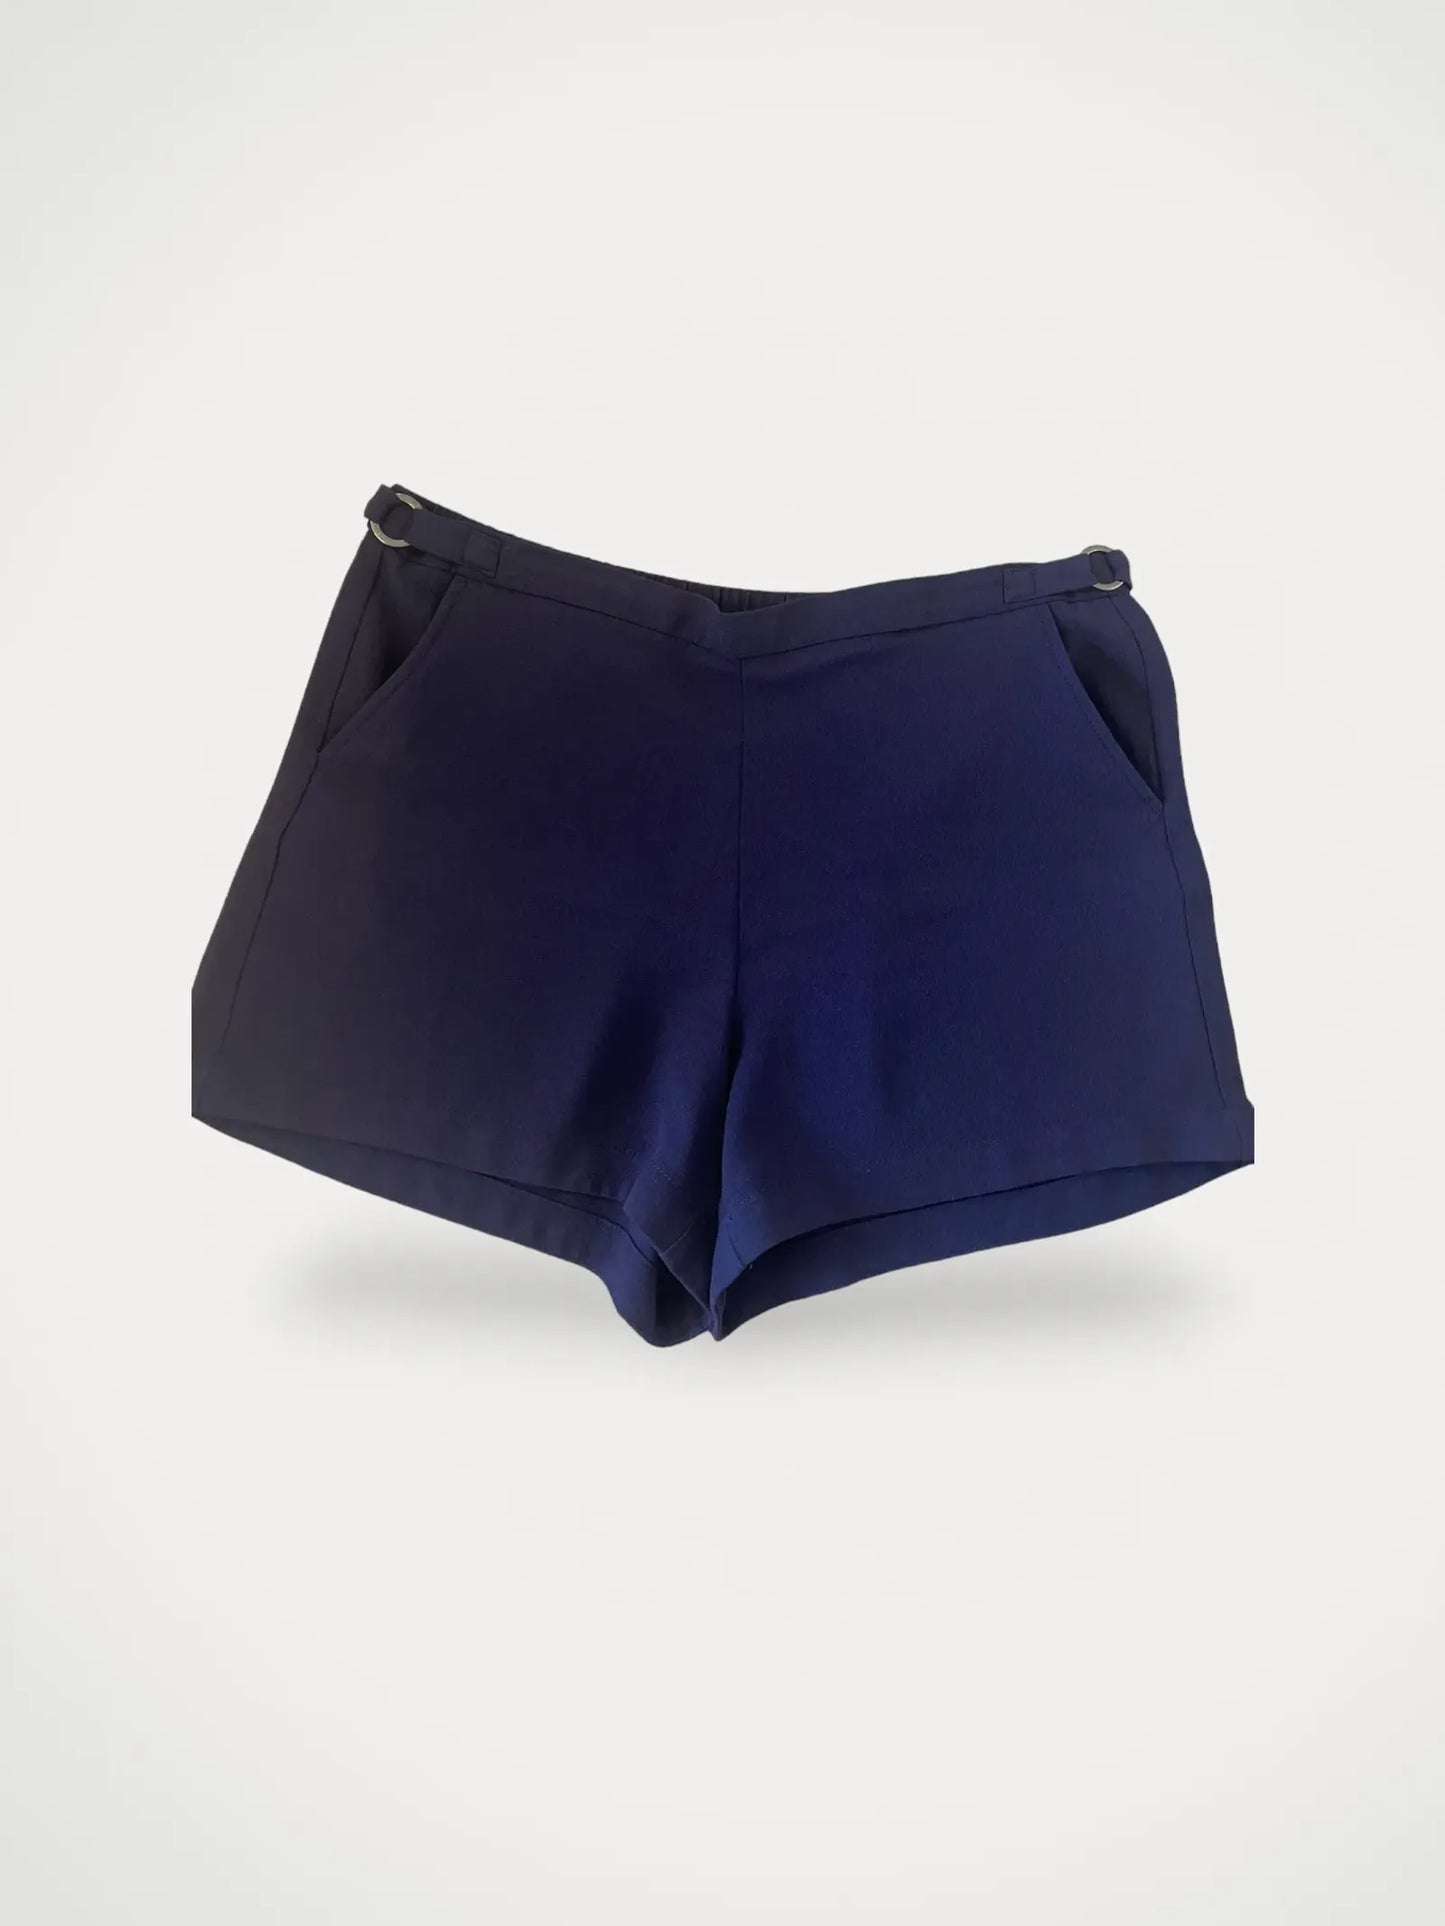 Calvin Klein-shorts